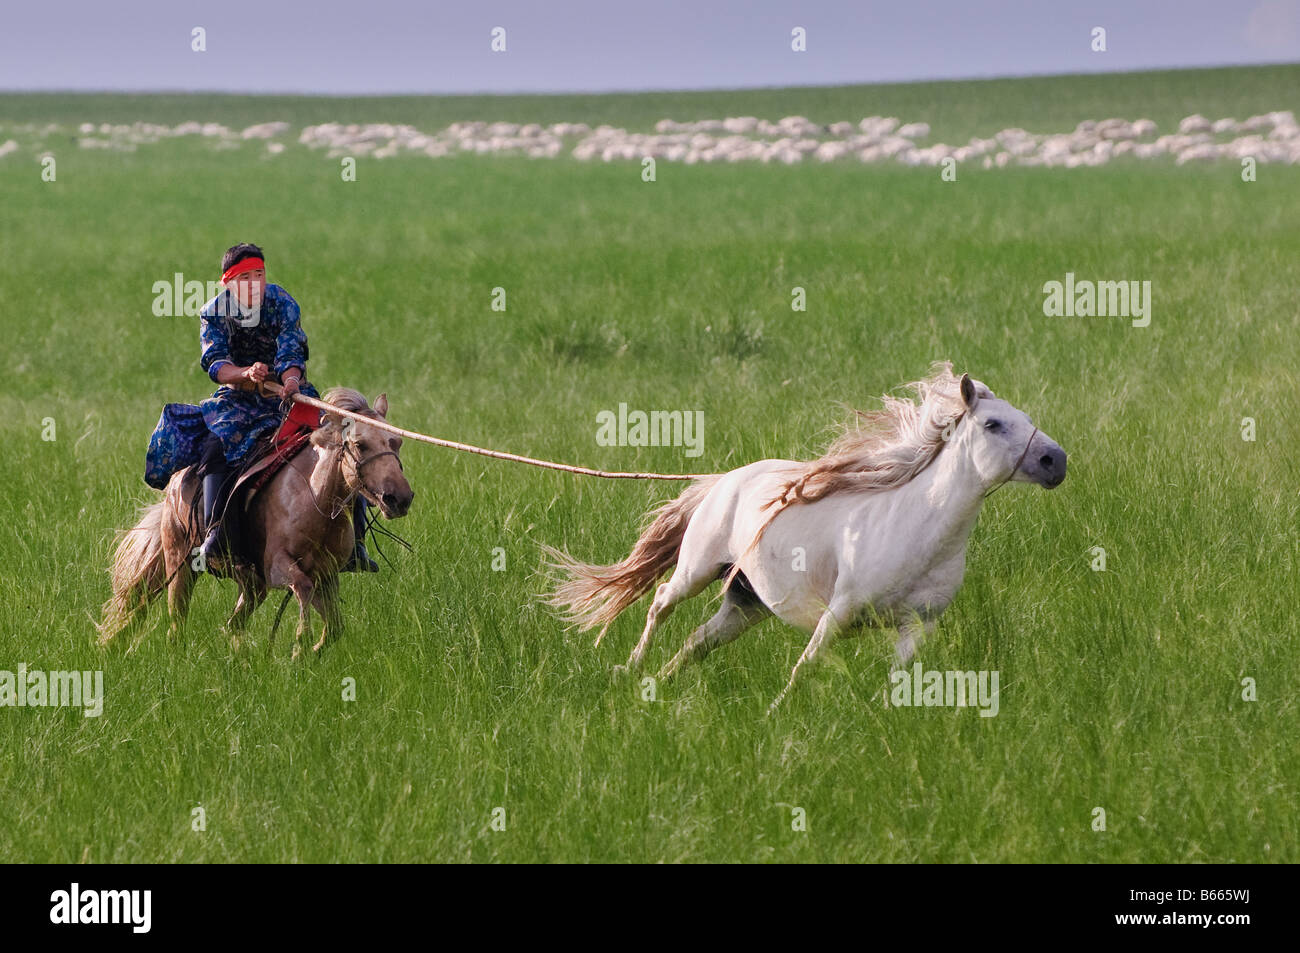 Grasslands herdsman on horseback catches horse with rope and pole urga Xilinhot Inner Mongolia China Stock Photo